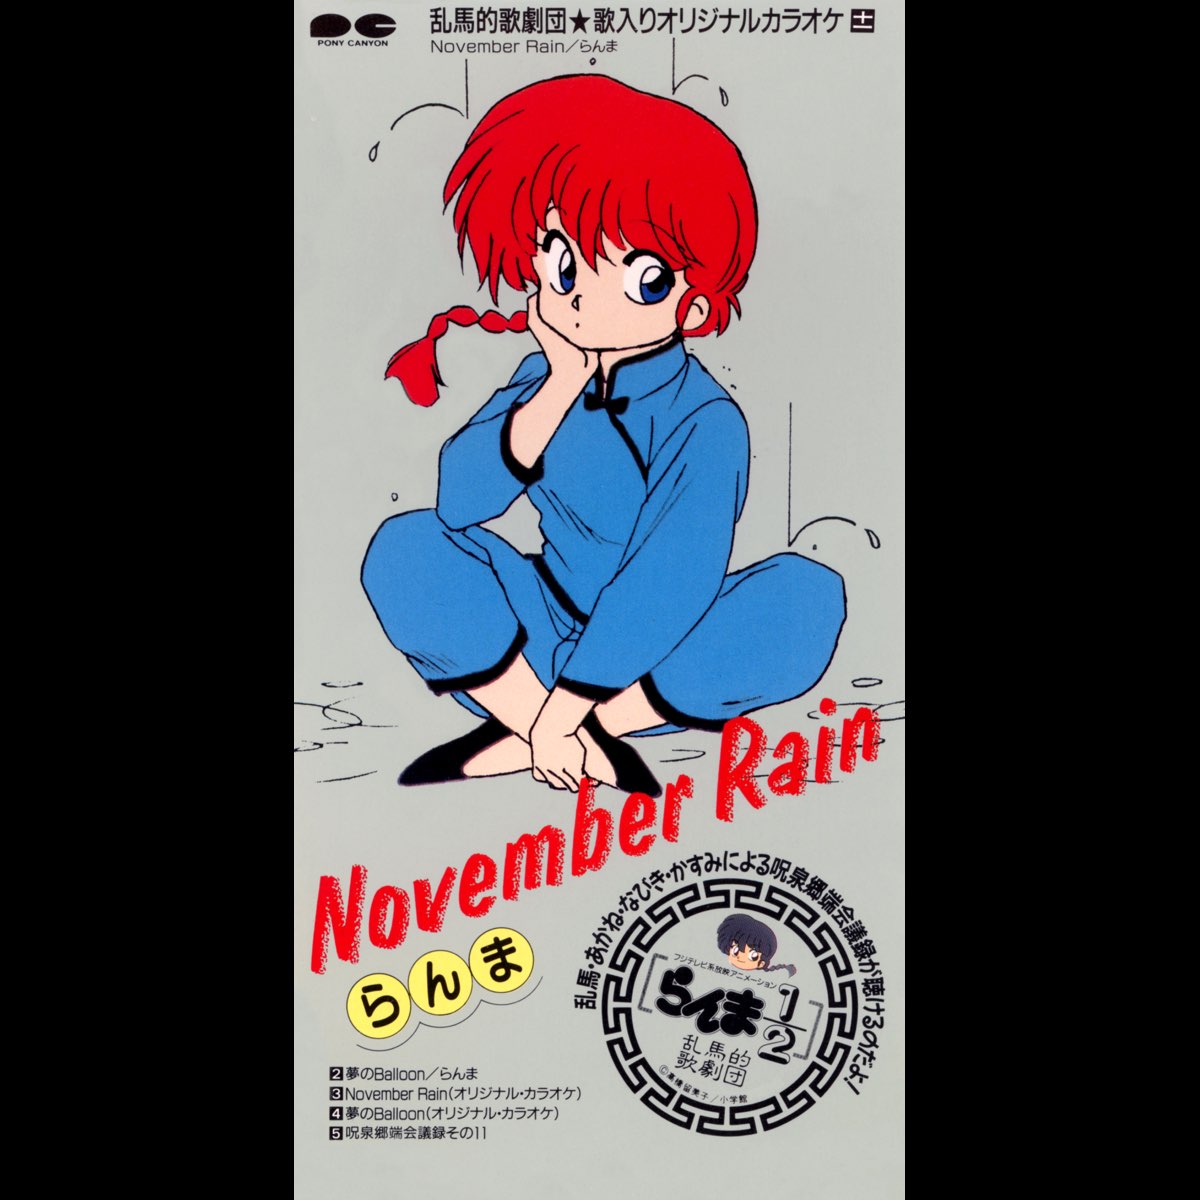 らんま1 2の November Rain Ep をapple Musicで